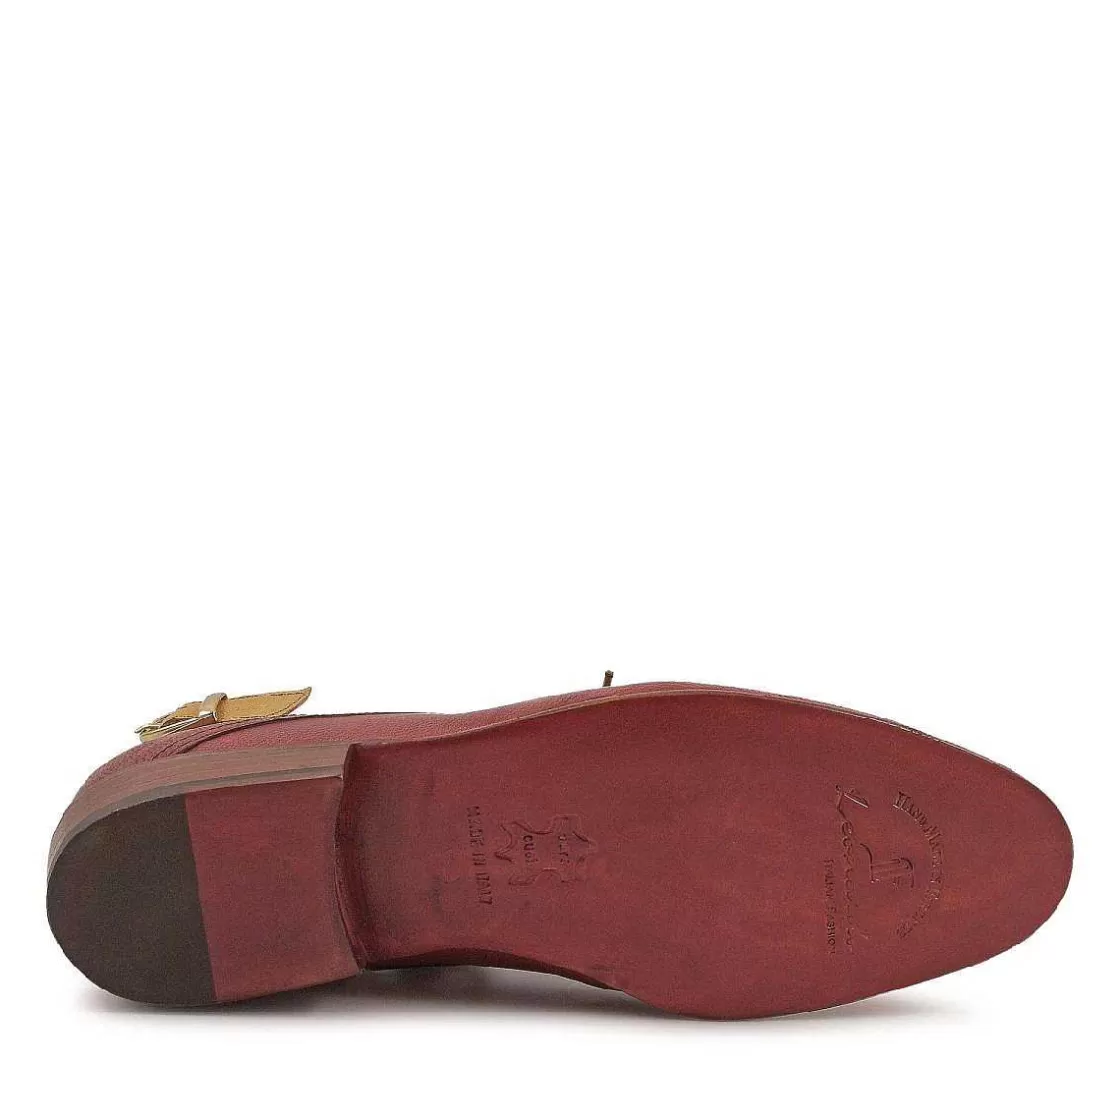 Leonardo Women'S Handmade Derby Shoes In Red Leather Best